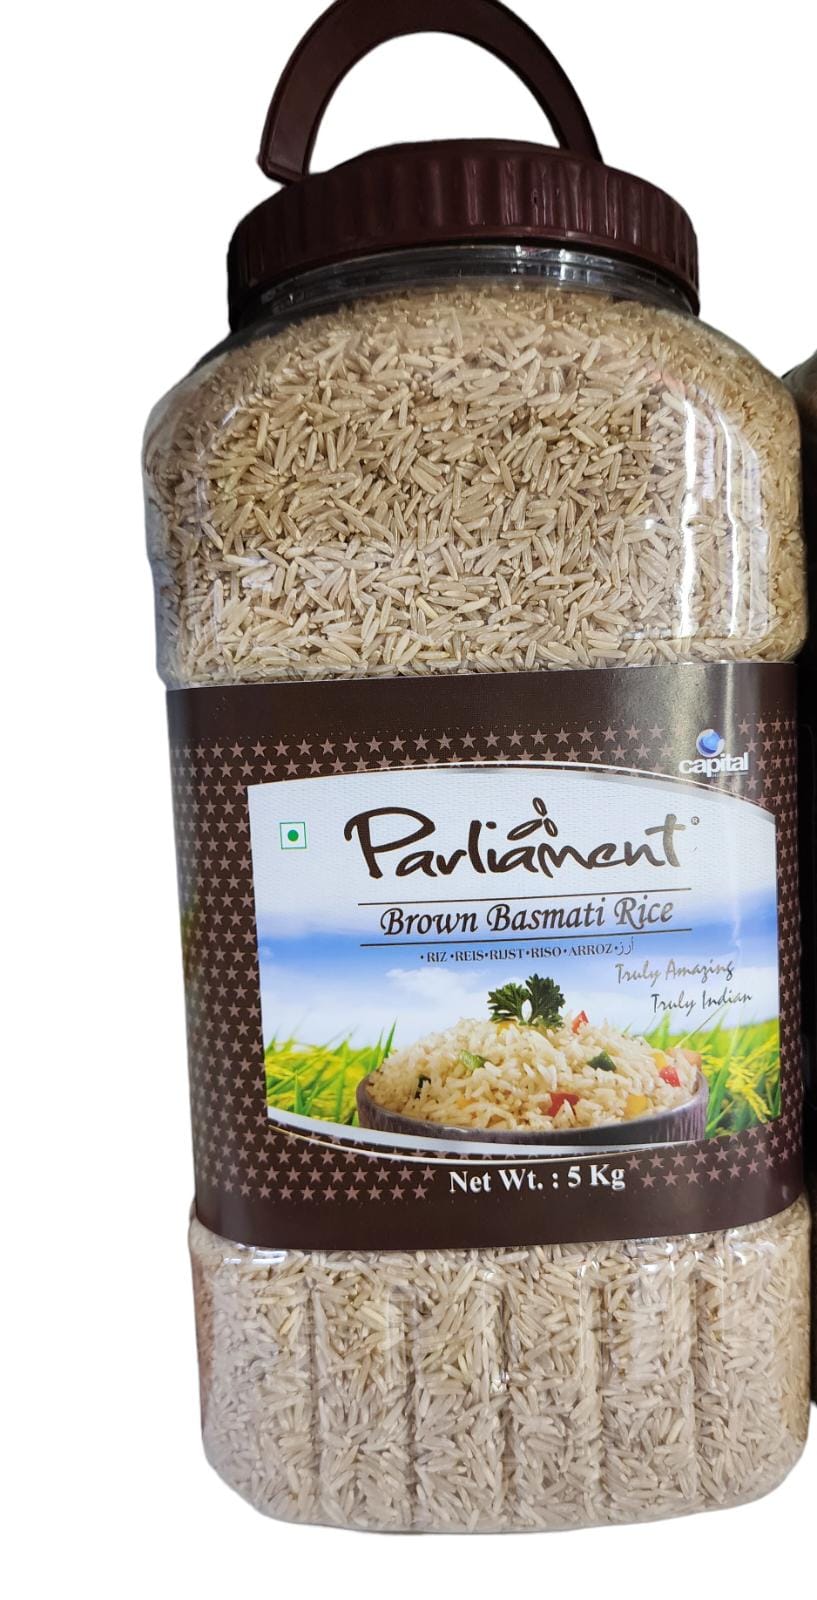 Parliament Brown Basmati Rice 5kg